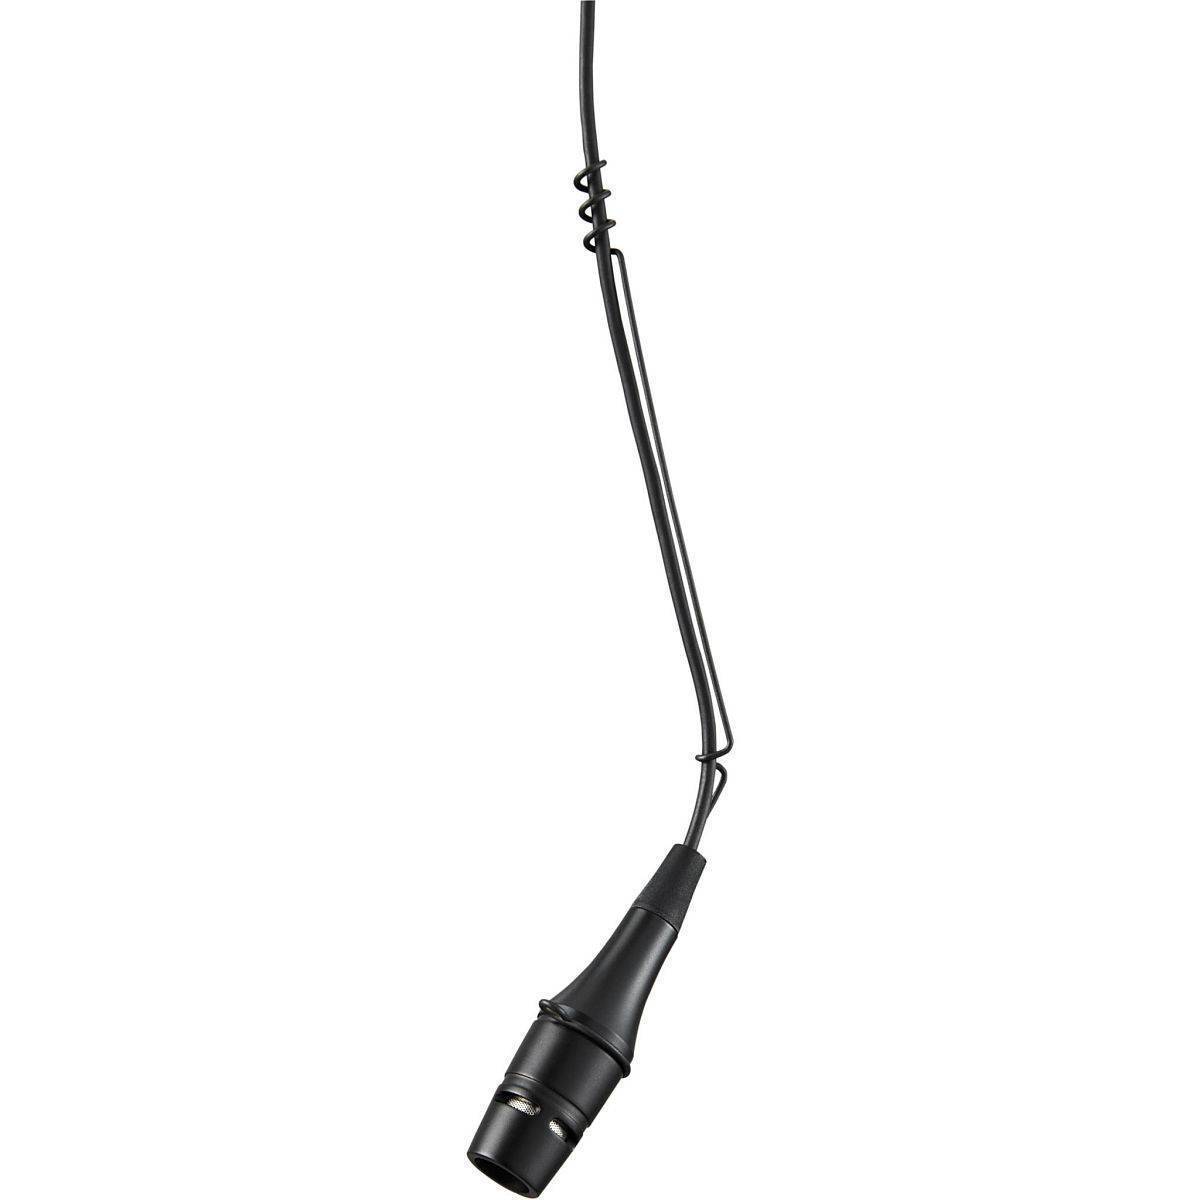 Microfono Shure Para colgar, cable de 7.6 mts, conector XLR